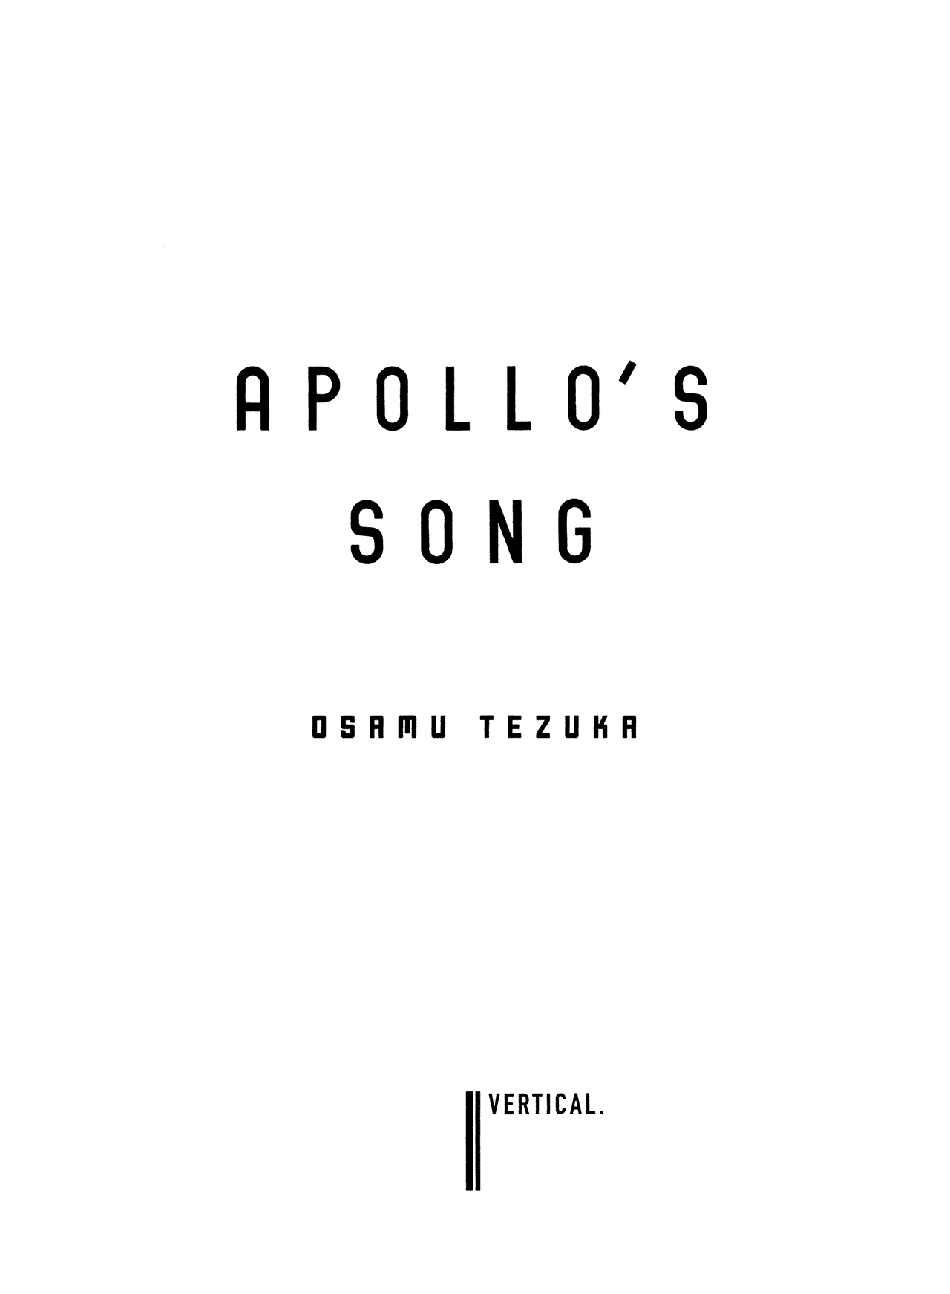 Apollo’s Song